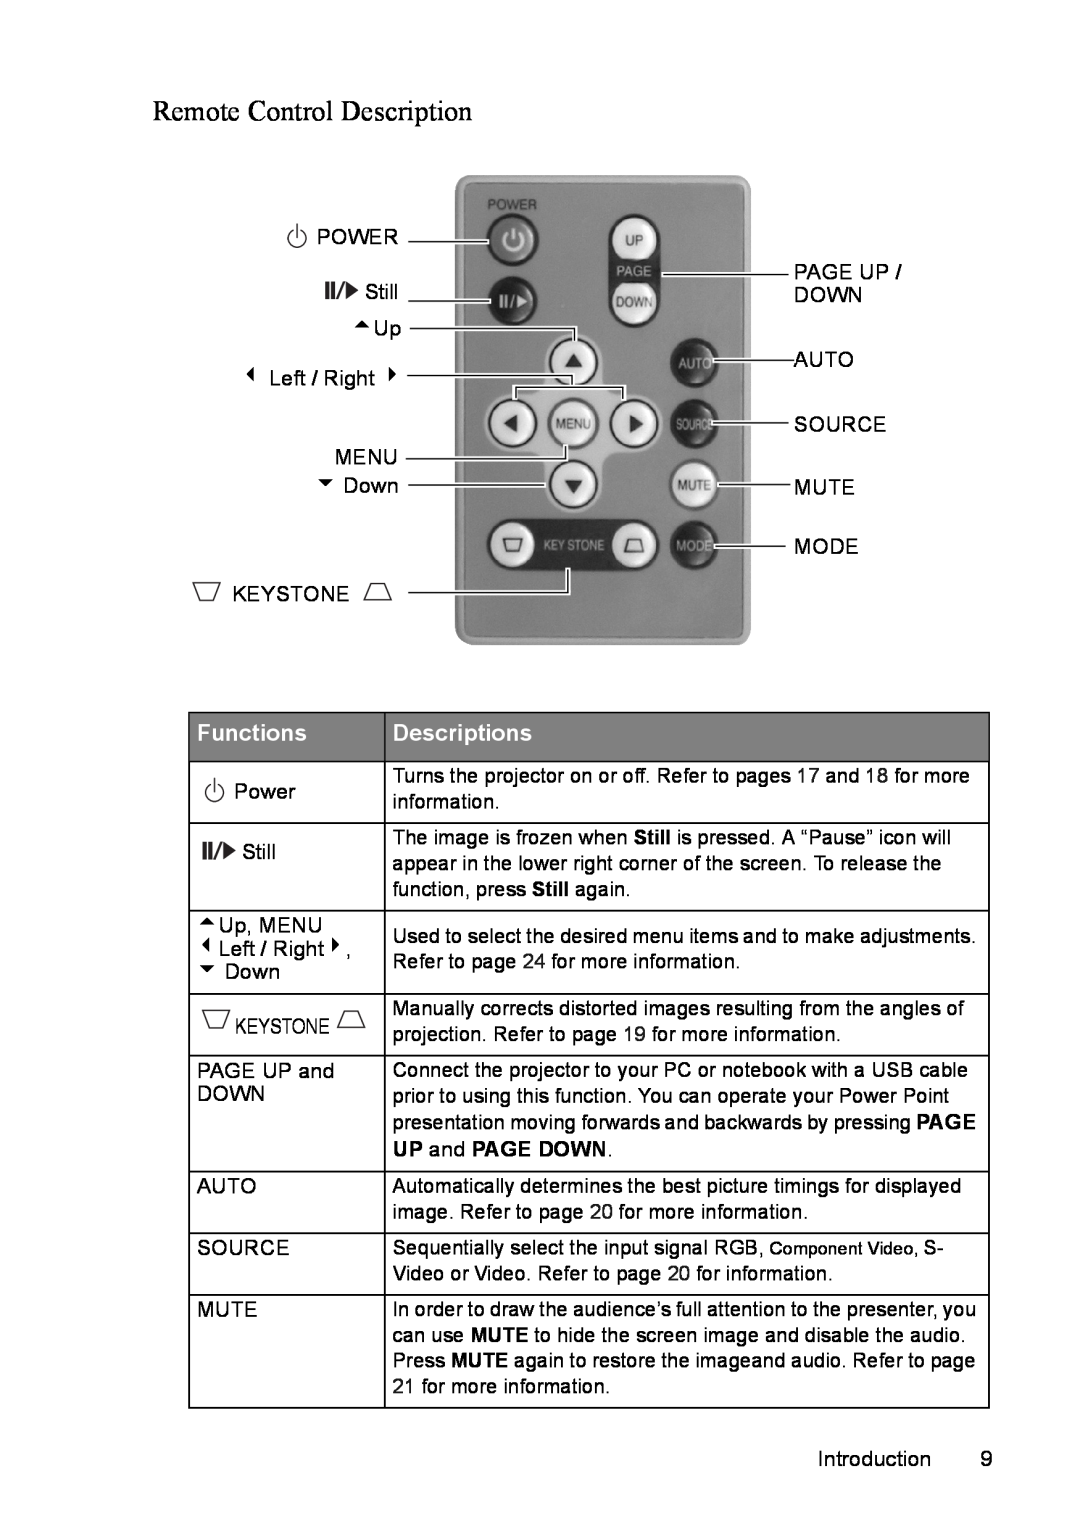 Mitsubishi Electronics SE2U user manual Remote Control Description, Functions, Descriptions 